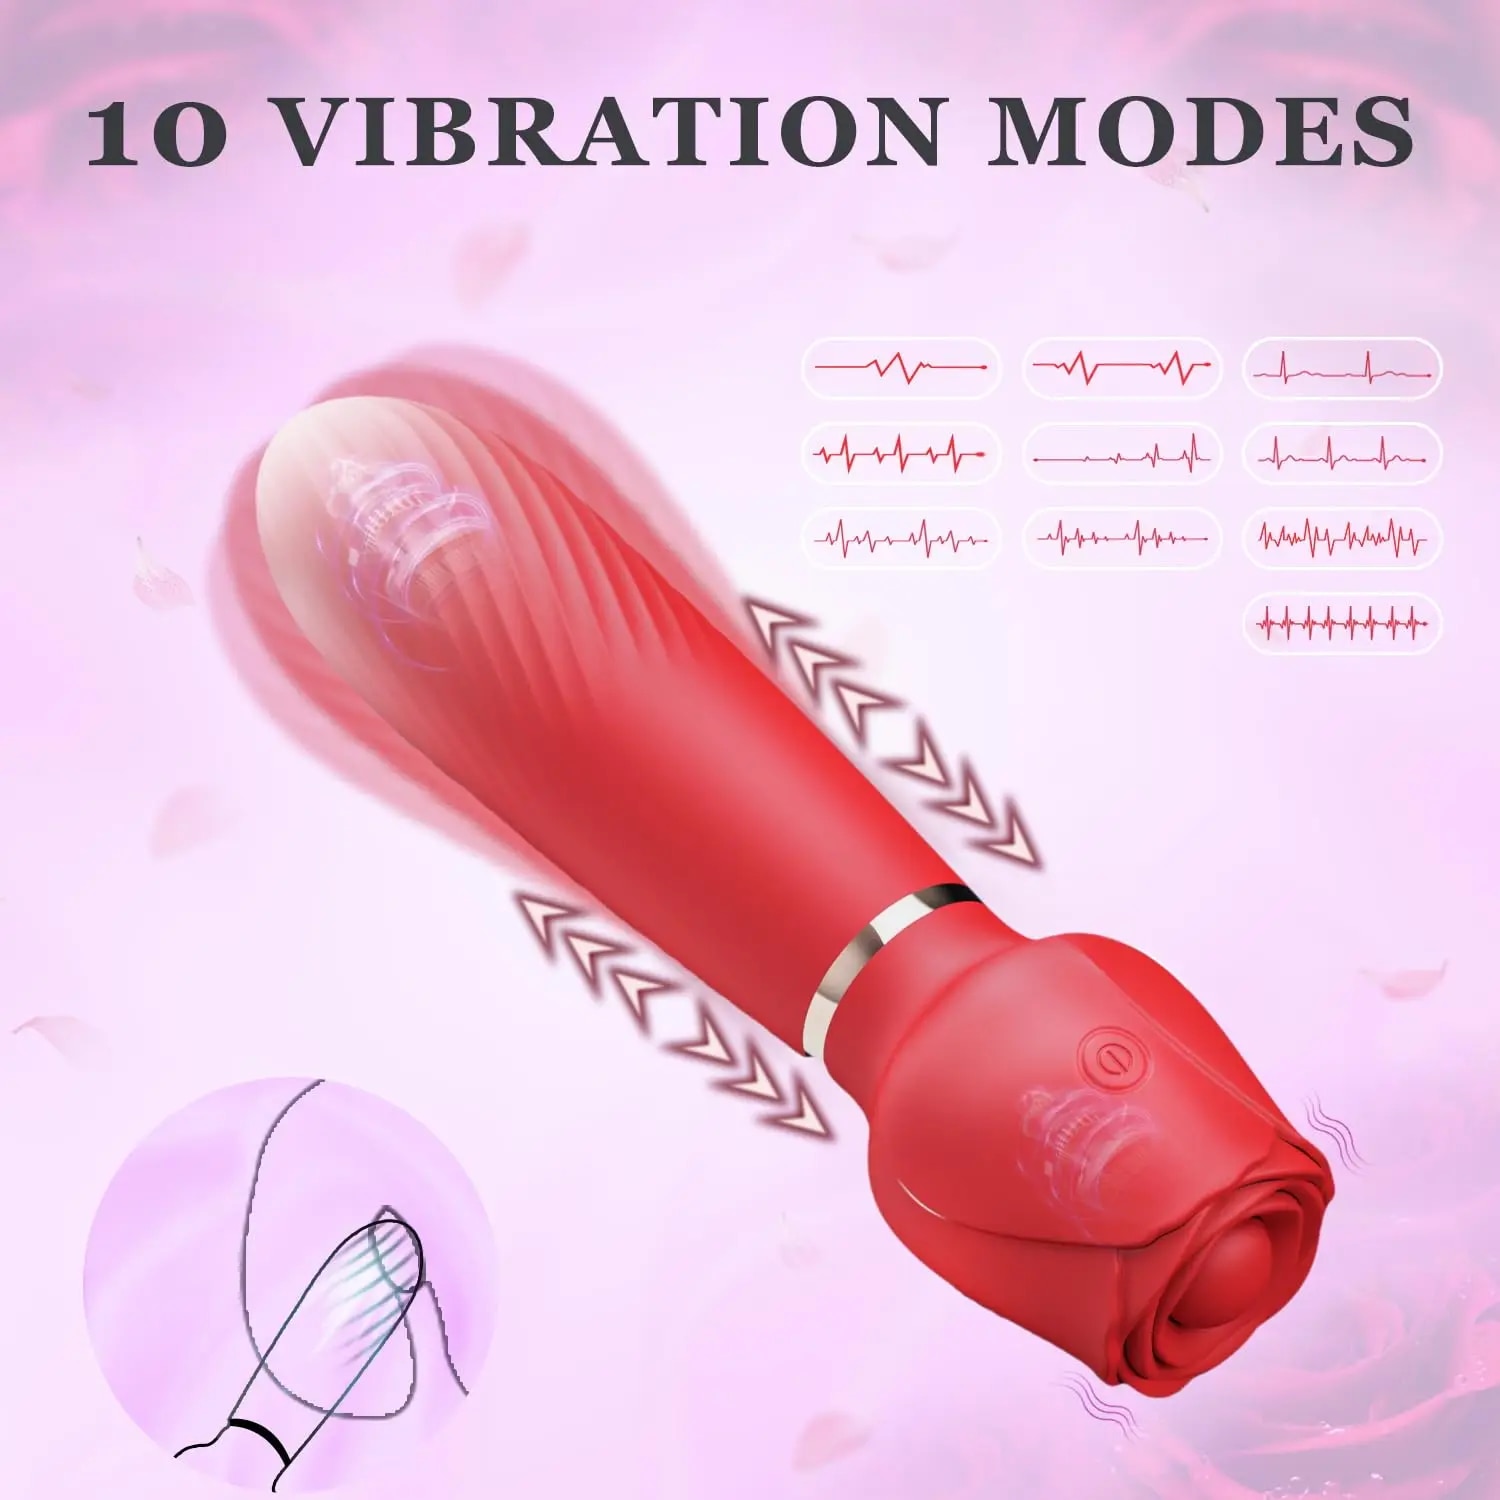 Đồ chơi tình dục đa chức năng dành cho cặp đôi người trưởng thành 18+, kích thích Clitoris và ngực 